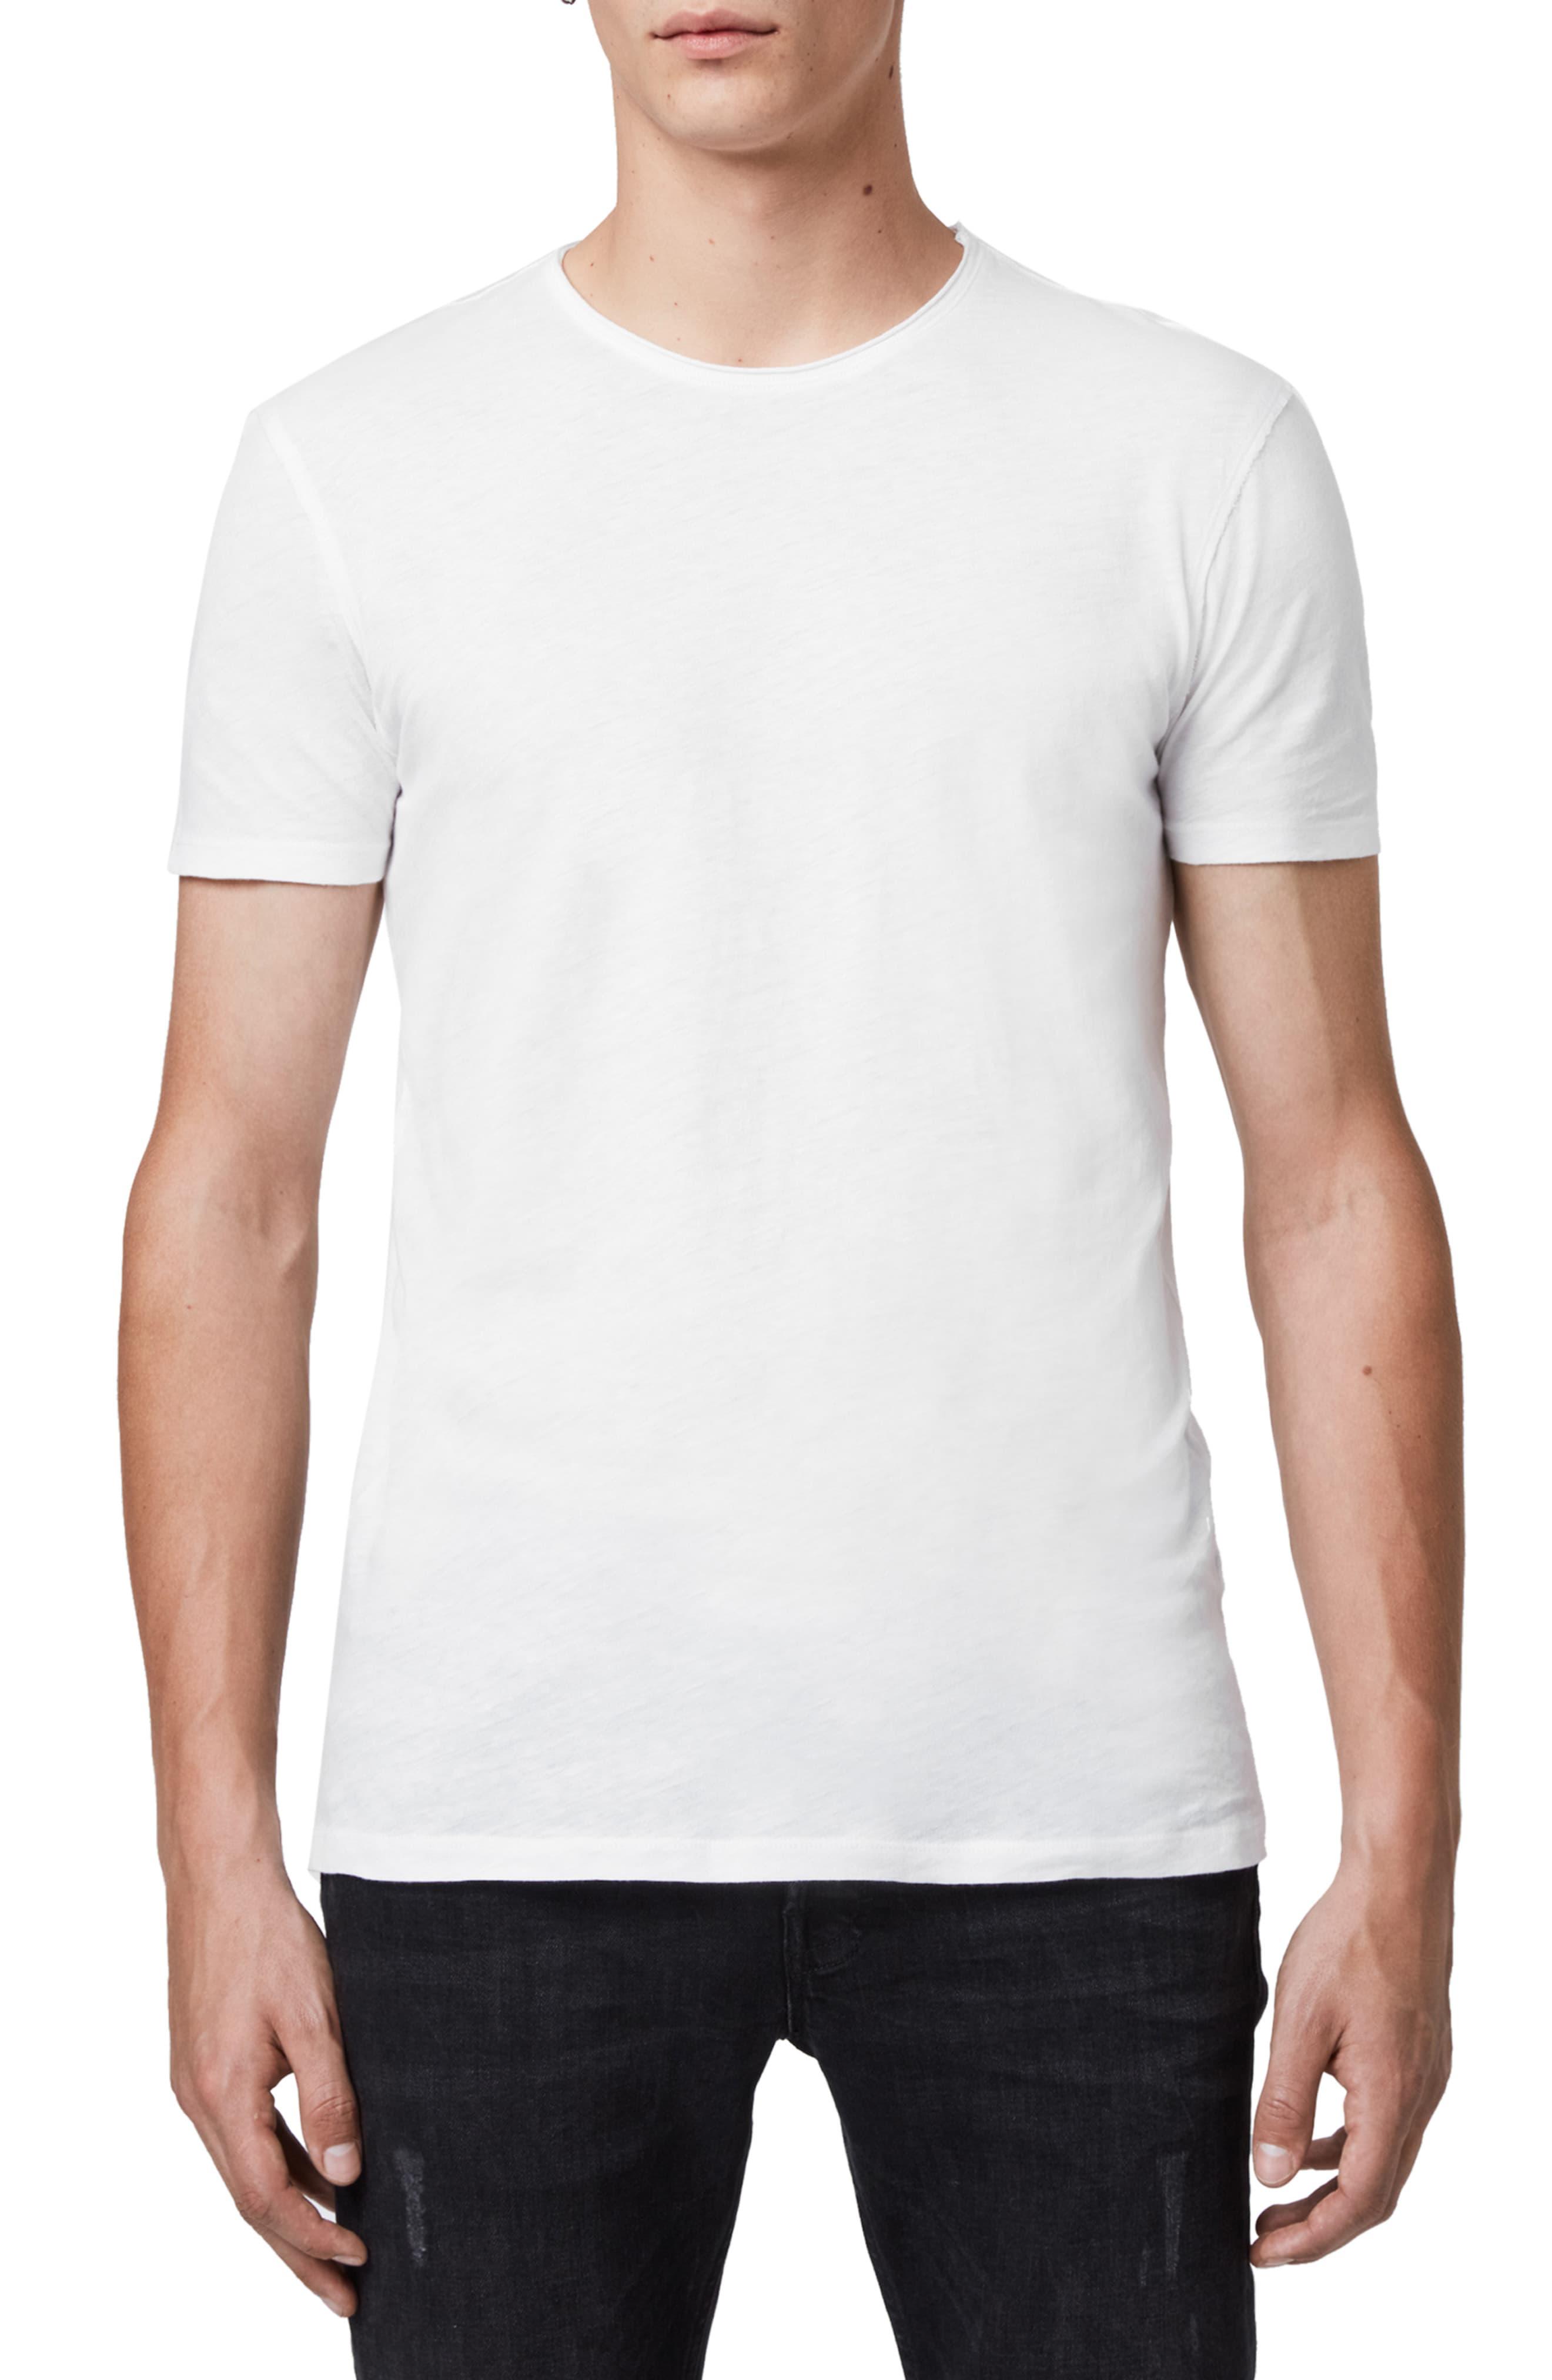 AllSaints Cotton Slim Fit Crewneck T-shirt in White for Men - Save 60% ...